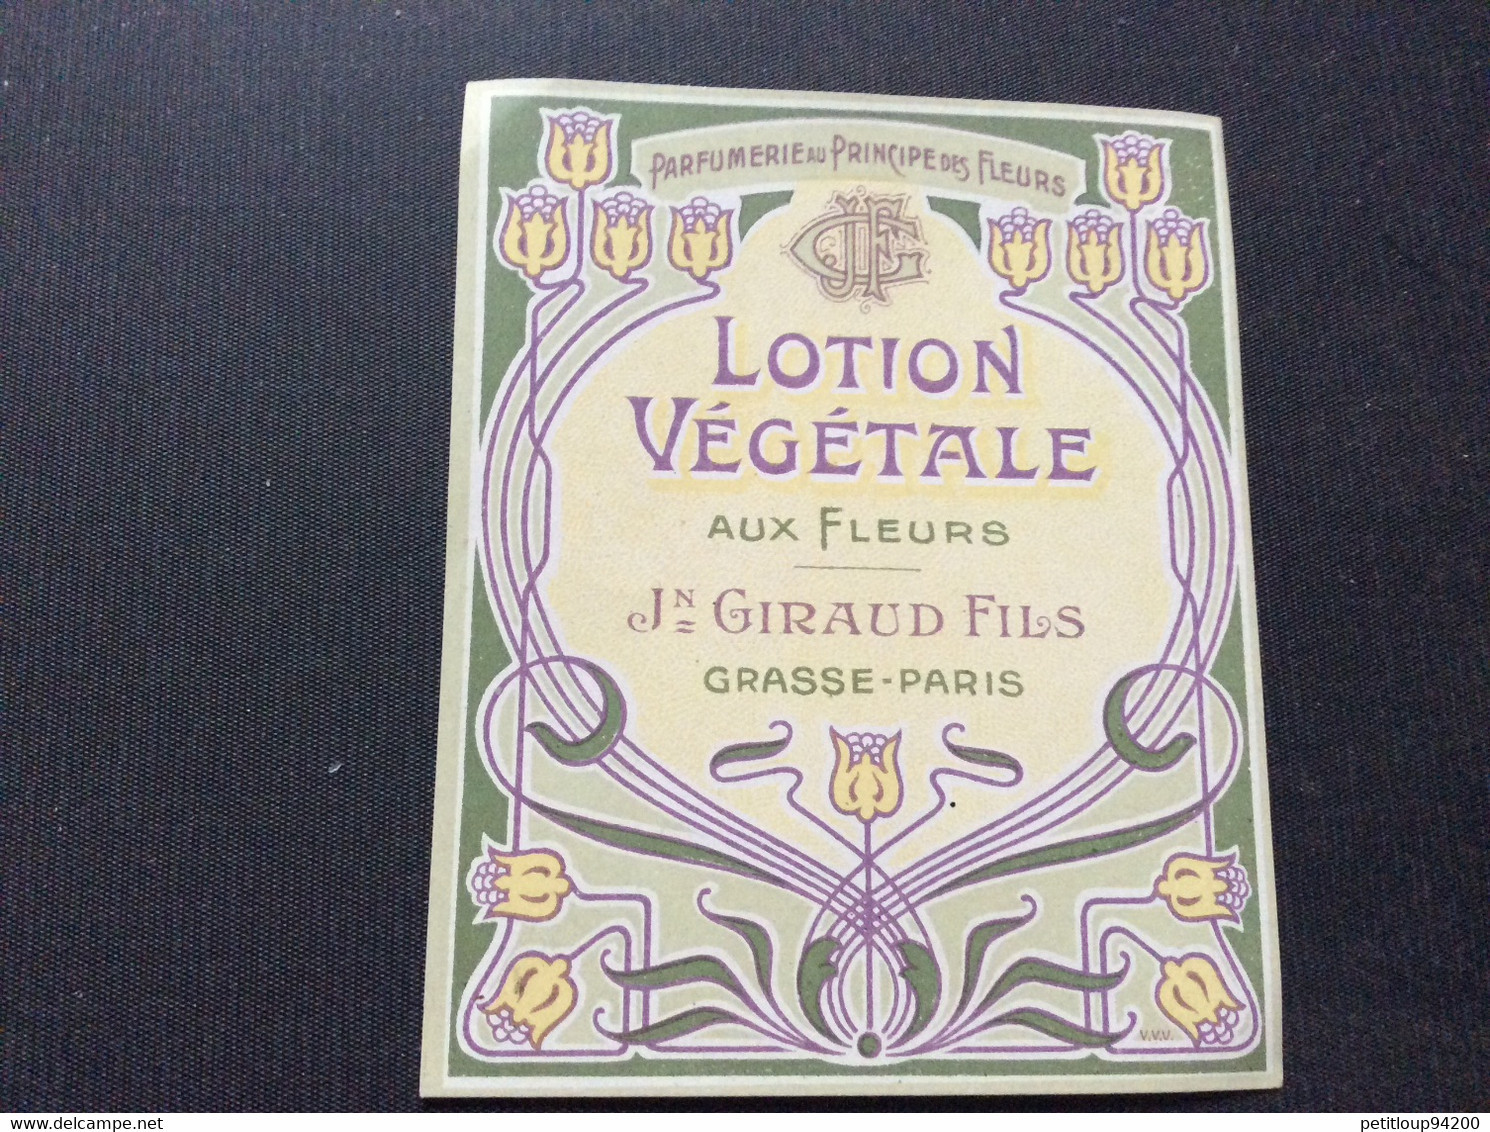 ETIQUETTE DE PARFUM  LOTION VÉGÉTALE Aux Fleurs  Jn GIRAUD FILS  Grasse-Paris - Etiquettes